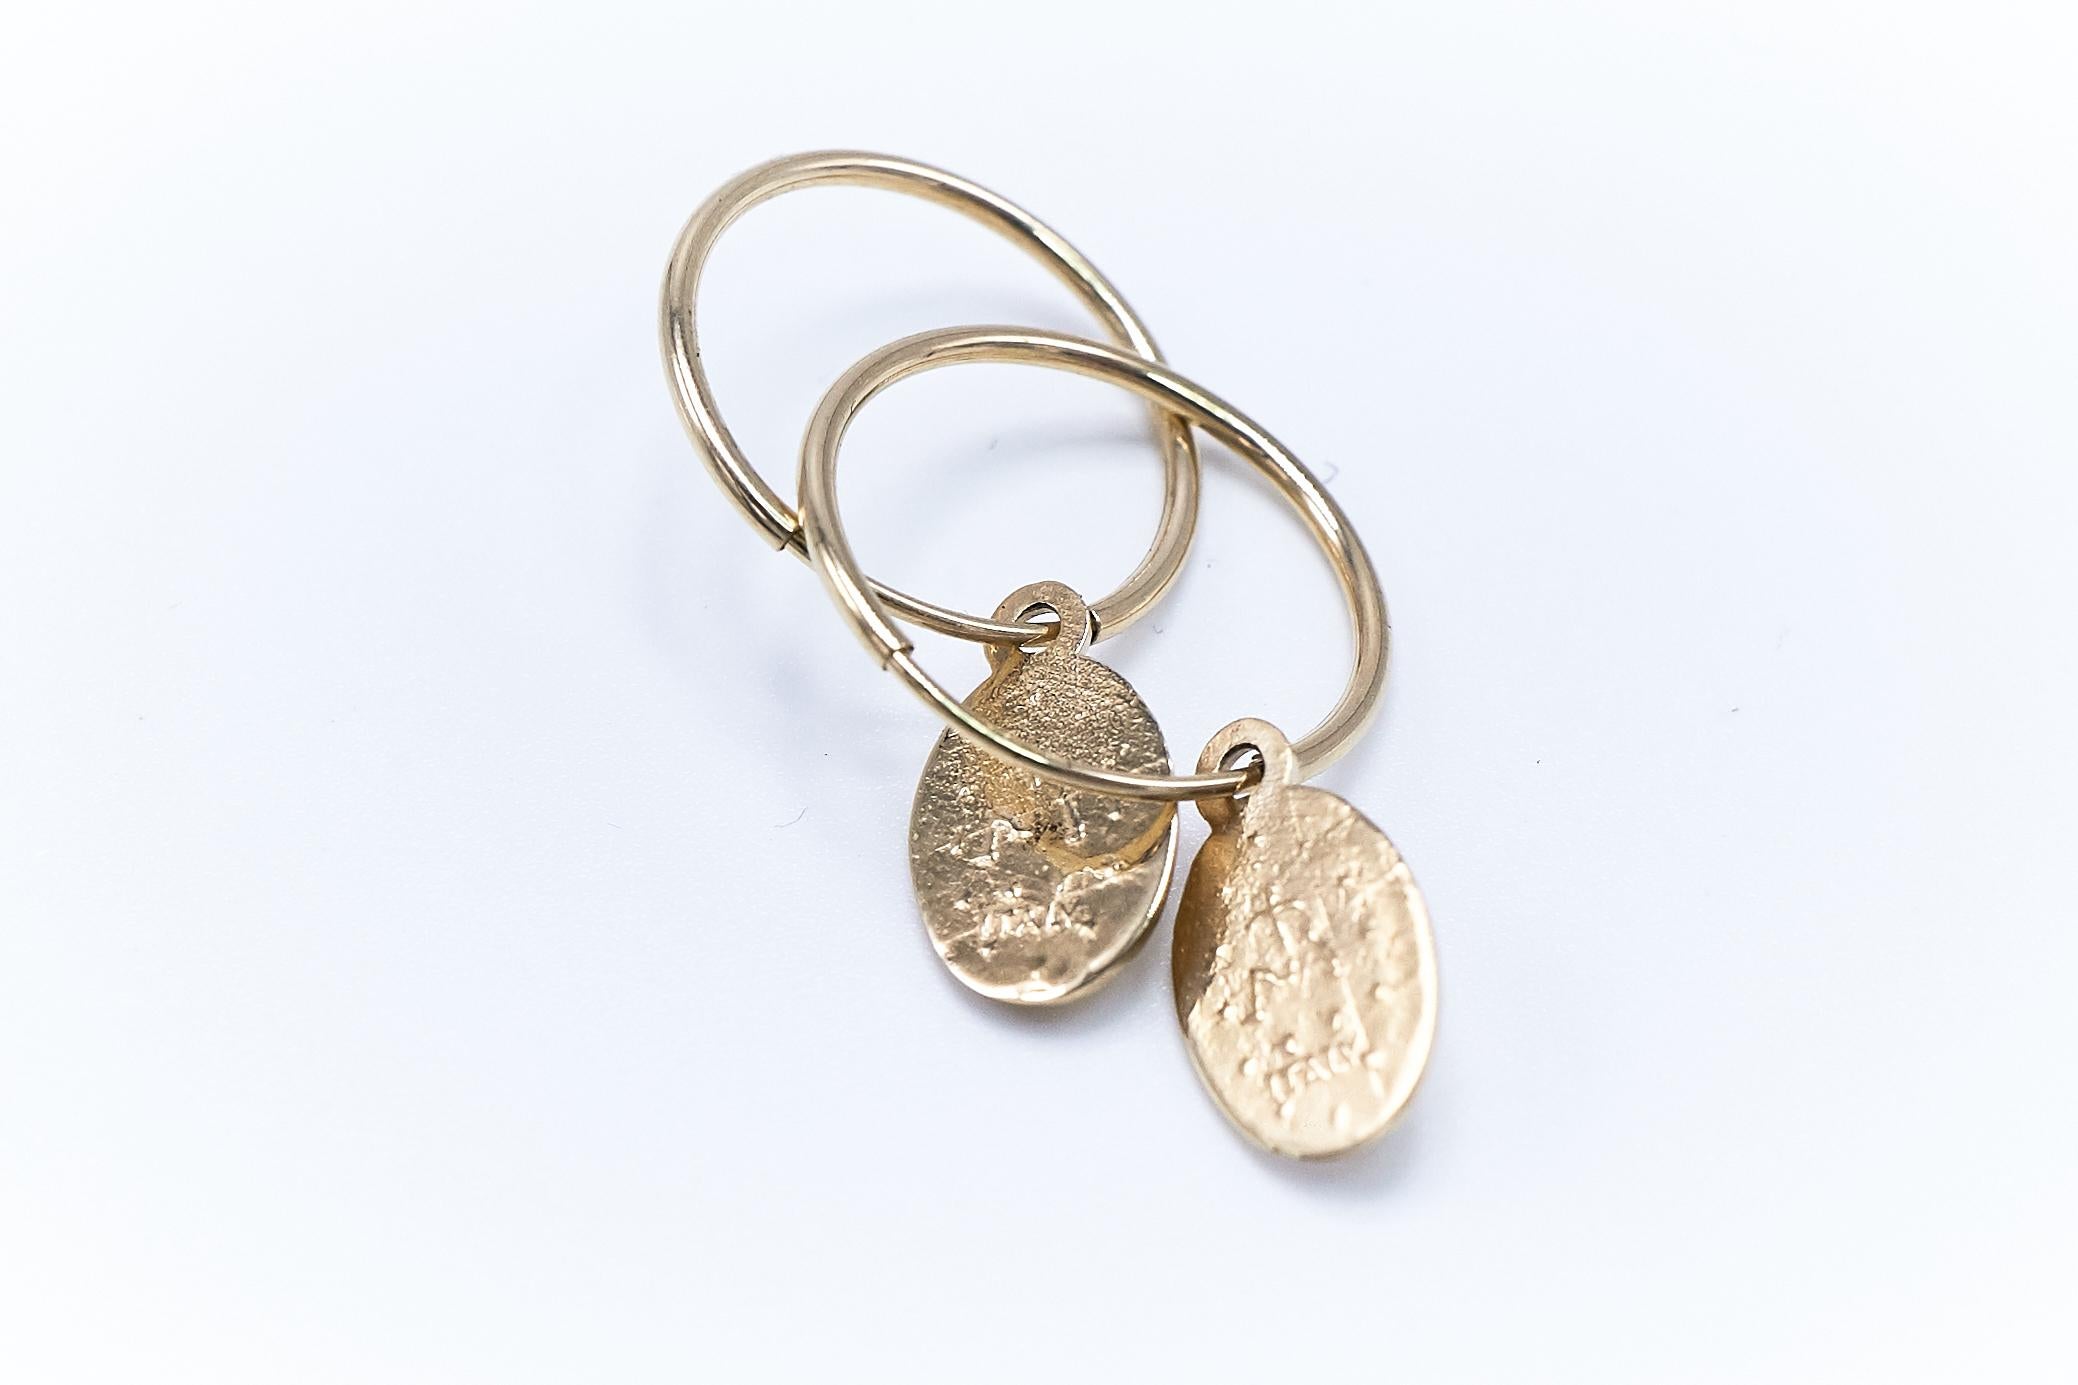 Gold Virgin Mary Hoop Earrings J Dauphin
Sold as a Pair

J DAUPHIN 